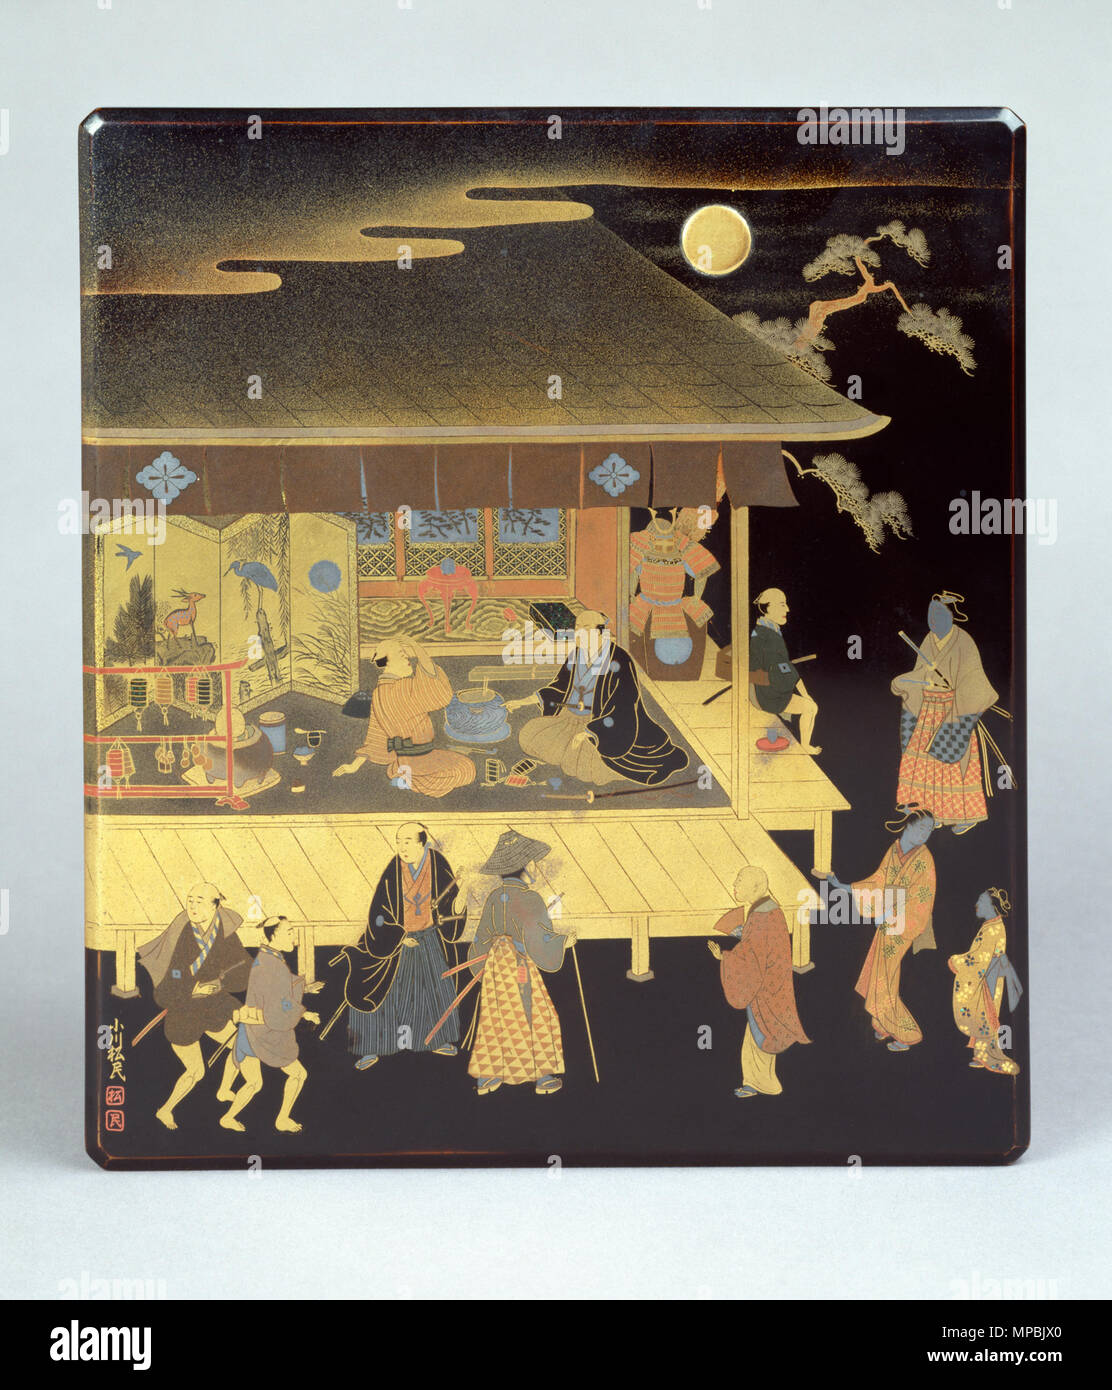 Ogawa (Shomin japonais, 1847-1891). 'Fort pour écrire (suzuri bako) avec un antiquaire's shop", fin du xixe siècle. incolore, de l'or, de nacre, d'argent. Walters Art Museum (67,162) : acquis par Henry Walters, 1906. 67,162 940 Ogawa Shomin - fort pour écrire (suzuri bako) avec un antiquaire's Shop - Walters 67162 - Top Banque D'Images